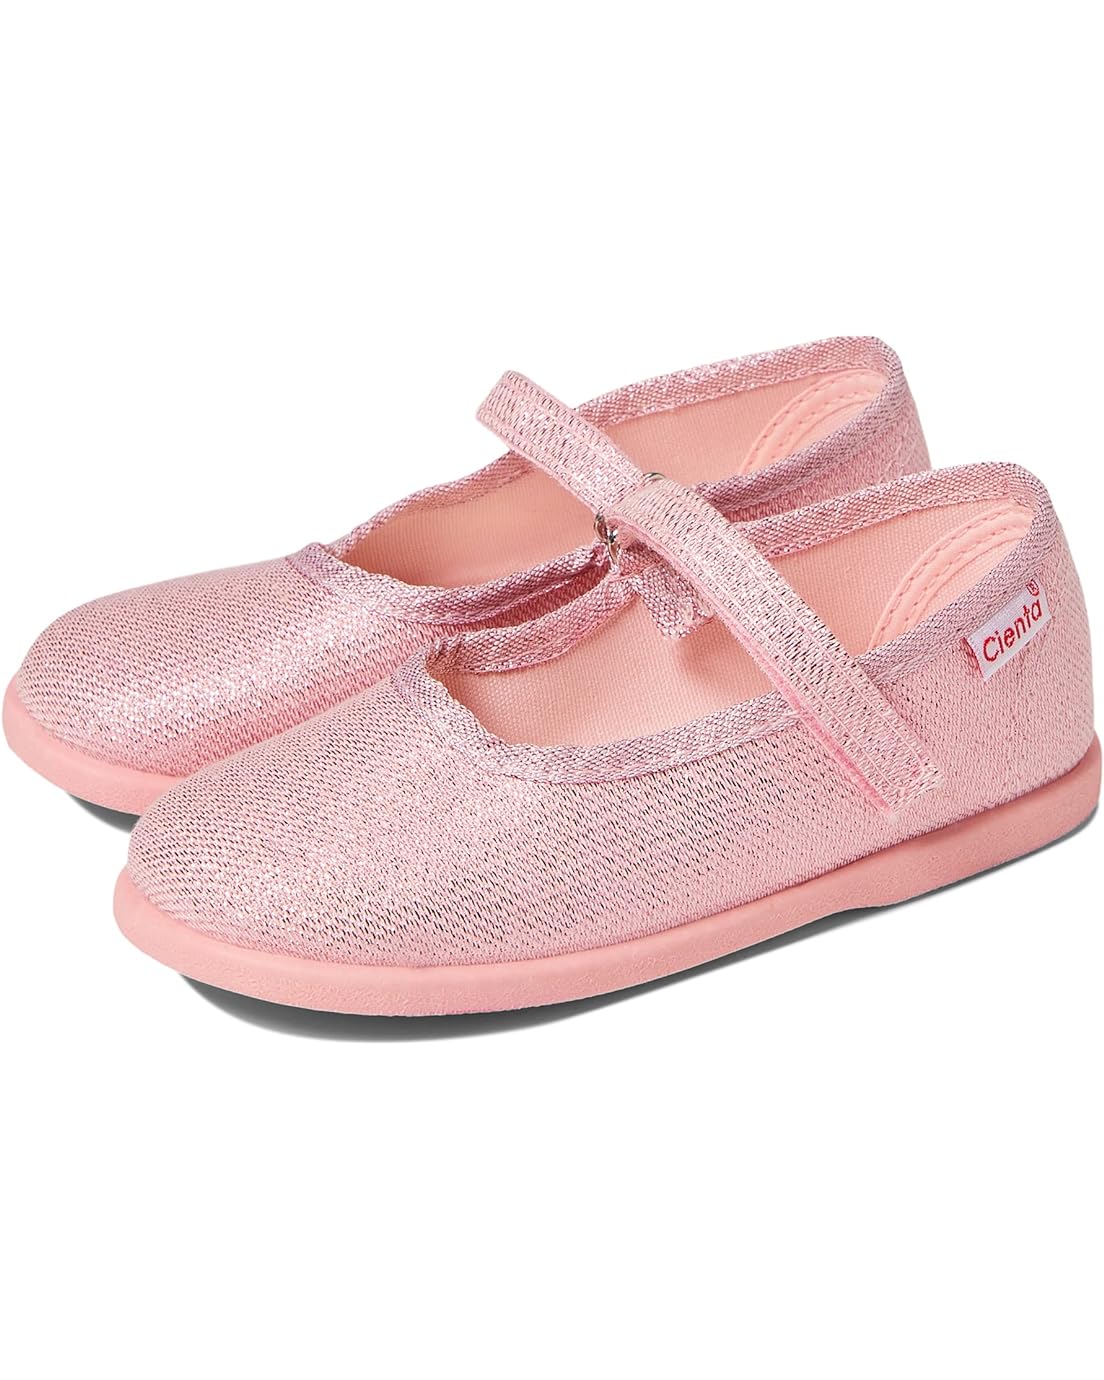 Cienta Kids Shoes 24013 (Toddler)